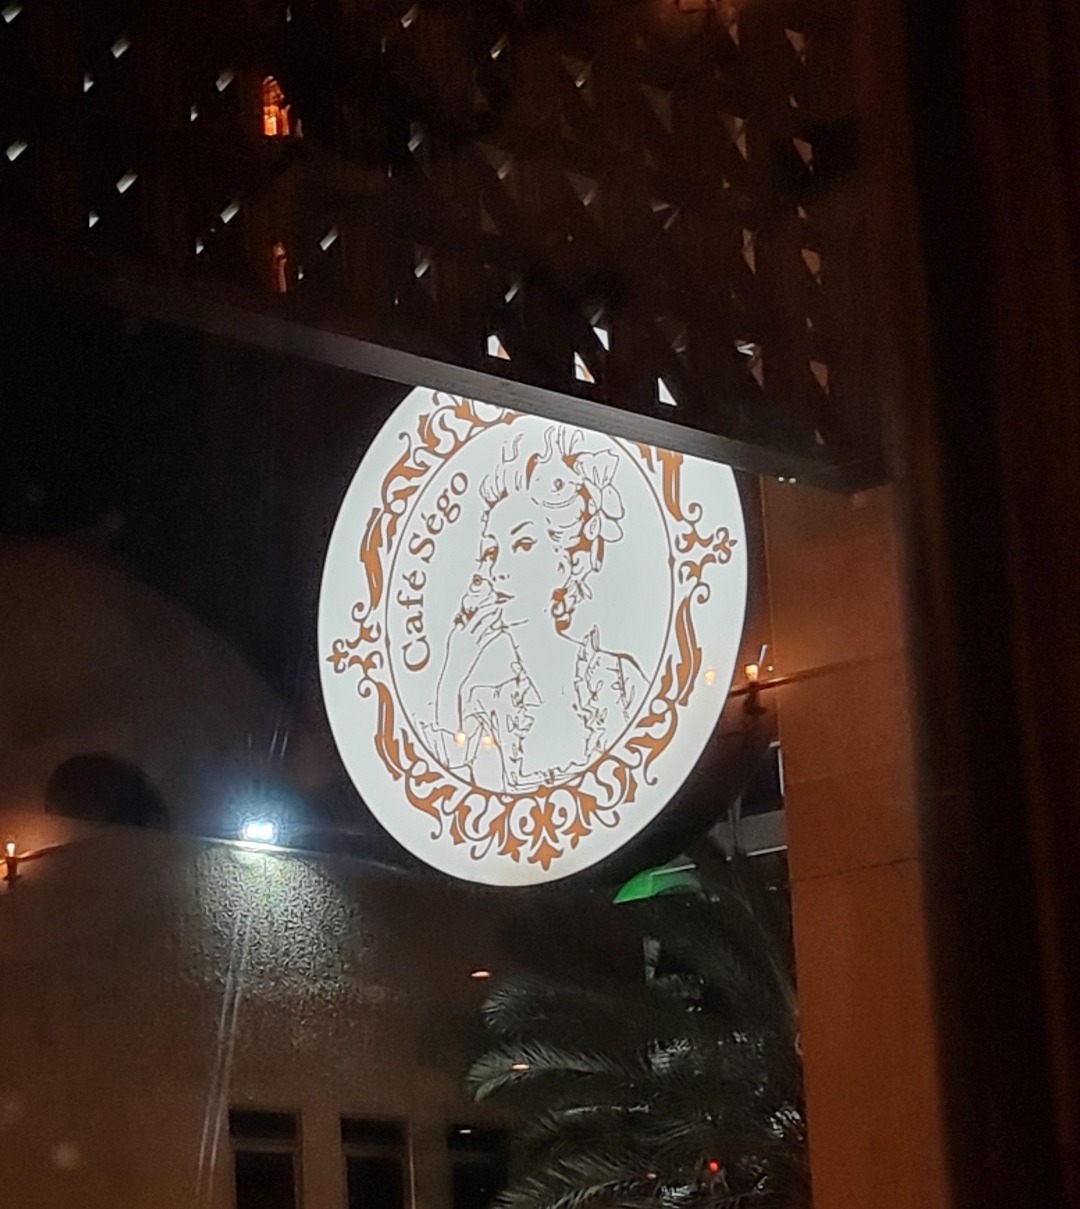 Cafe Sego - Bahrain